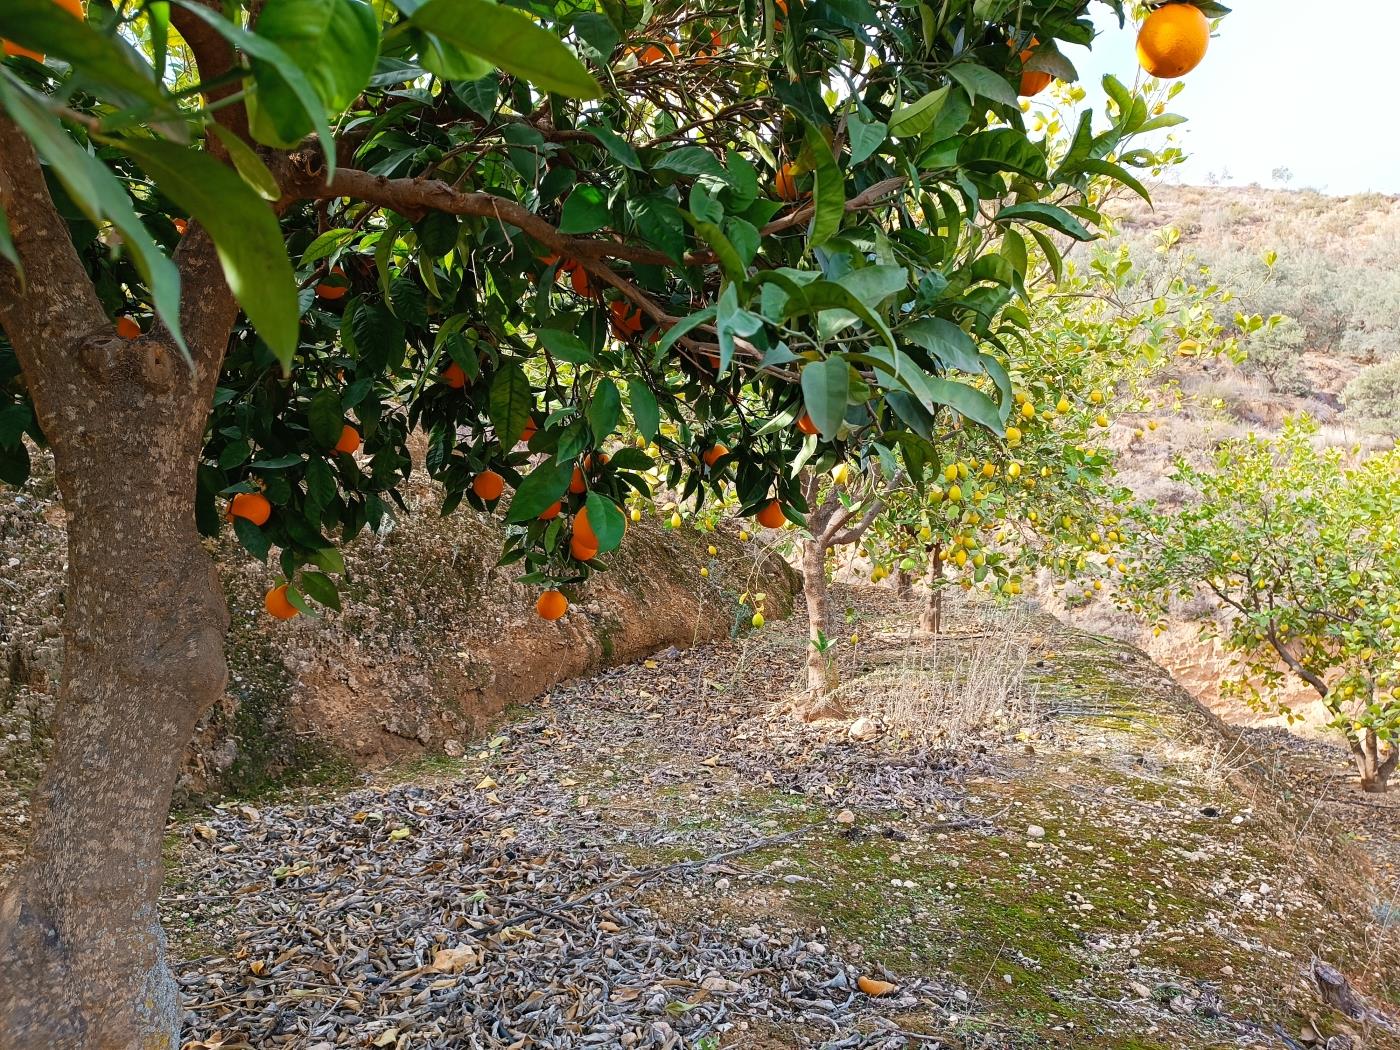 Sinaasappelboomgaard met een kleine gereedschapsschuur, irrigatievijver en uitzi .en Restábal